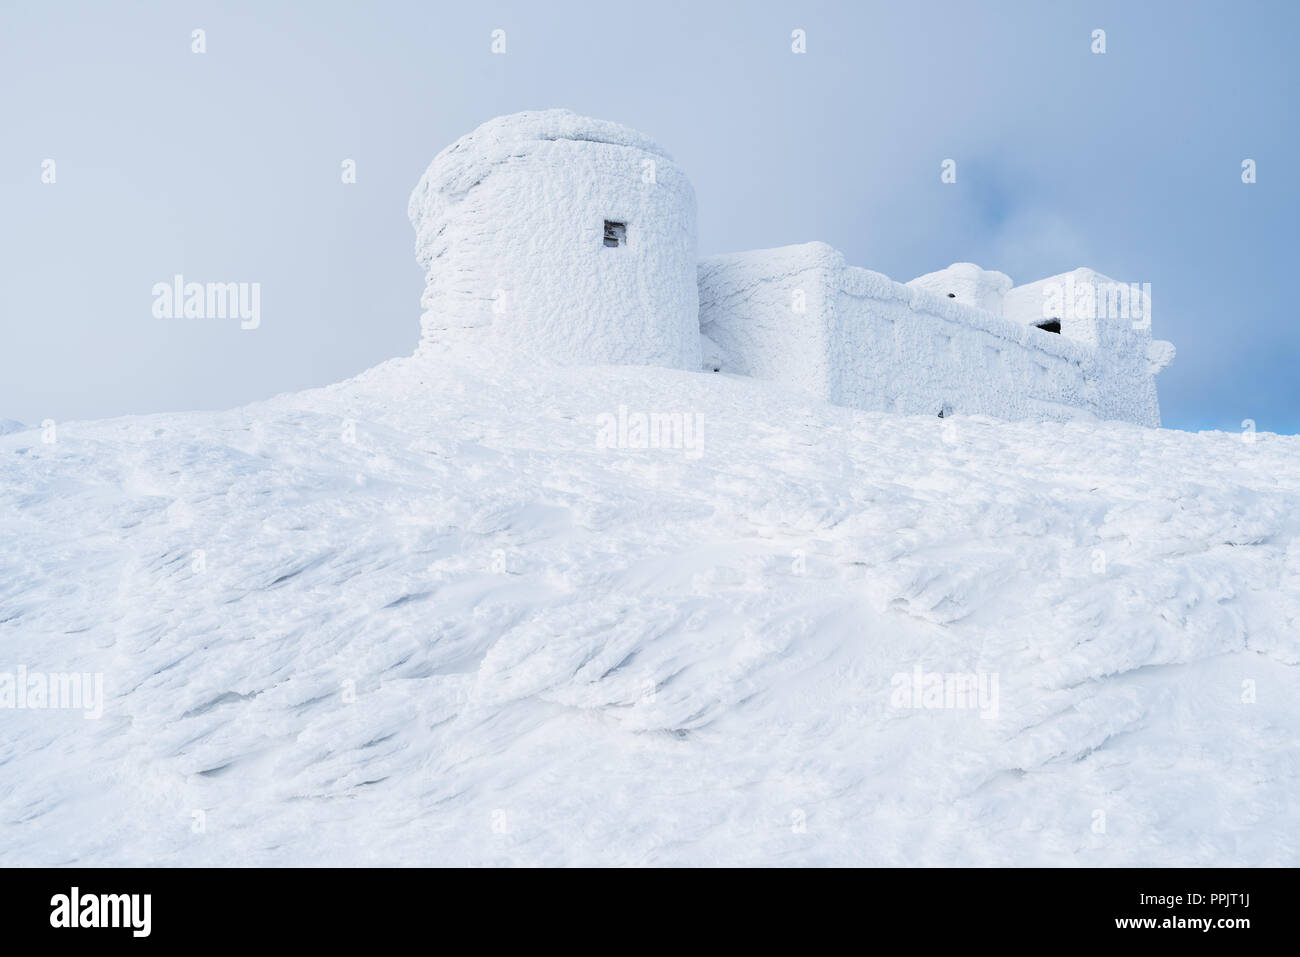 Paesaggio invernale con una bella texture della neve. Il vecchio osservatorio sulla cima della montagna. Giorno nuvoloso. Carpazi, Ucraina, Europa Foto Stock